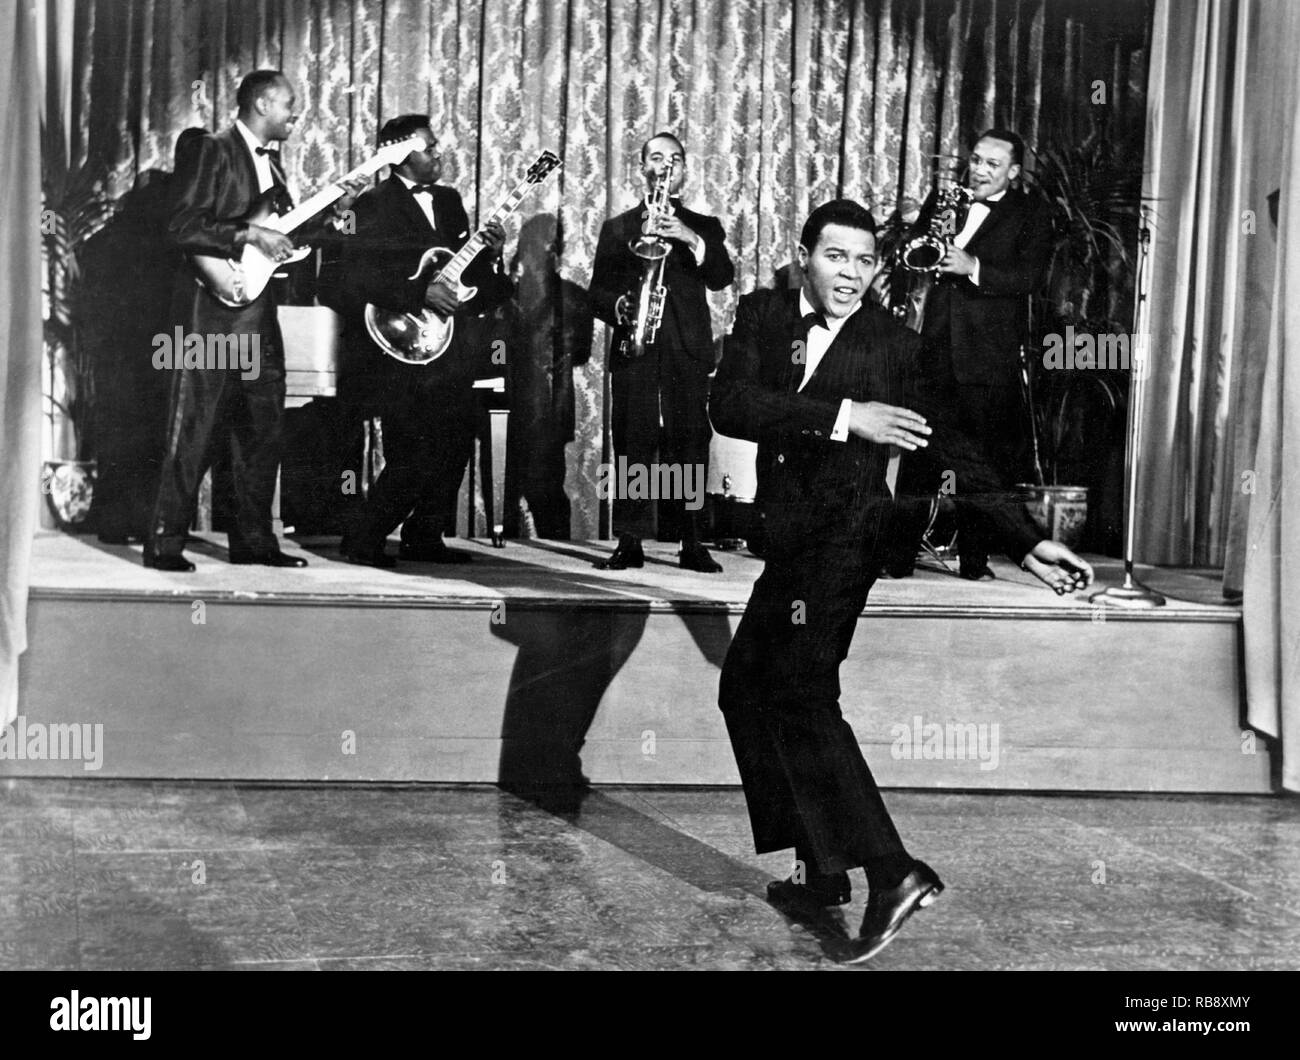 Chubby Checker. Geboren 1941. American rock'n'roll Sänger und Tänzer und ist weithin für die Popularisierung viele Tanzstile einschließlich der Twist Tanz Stil bekannt. Hier abgebildet in dem Film drehen sie rund um die Uhr, 1961 freigegeben. Stockfoto